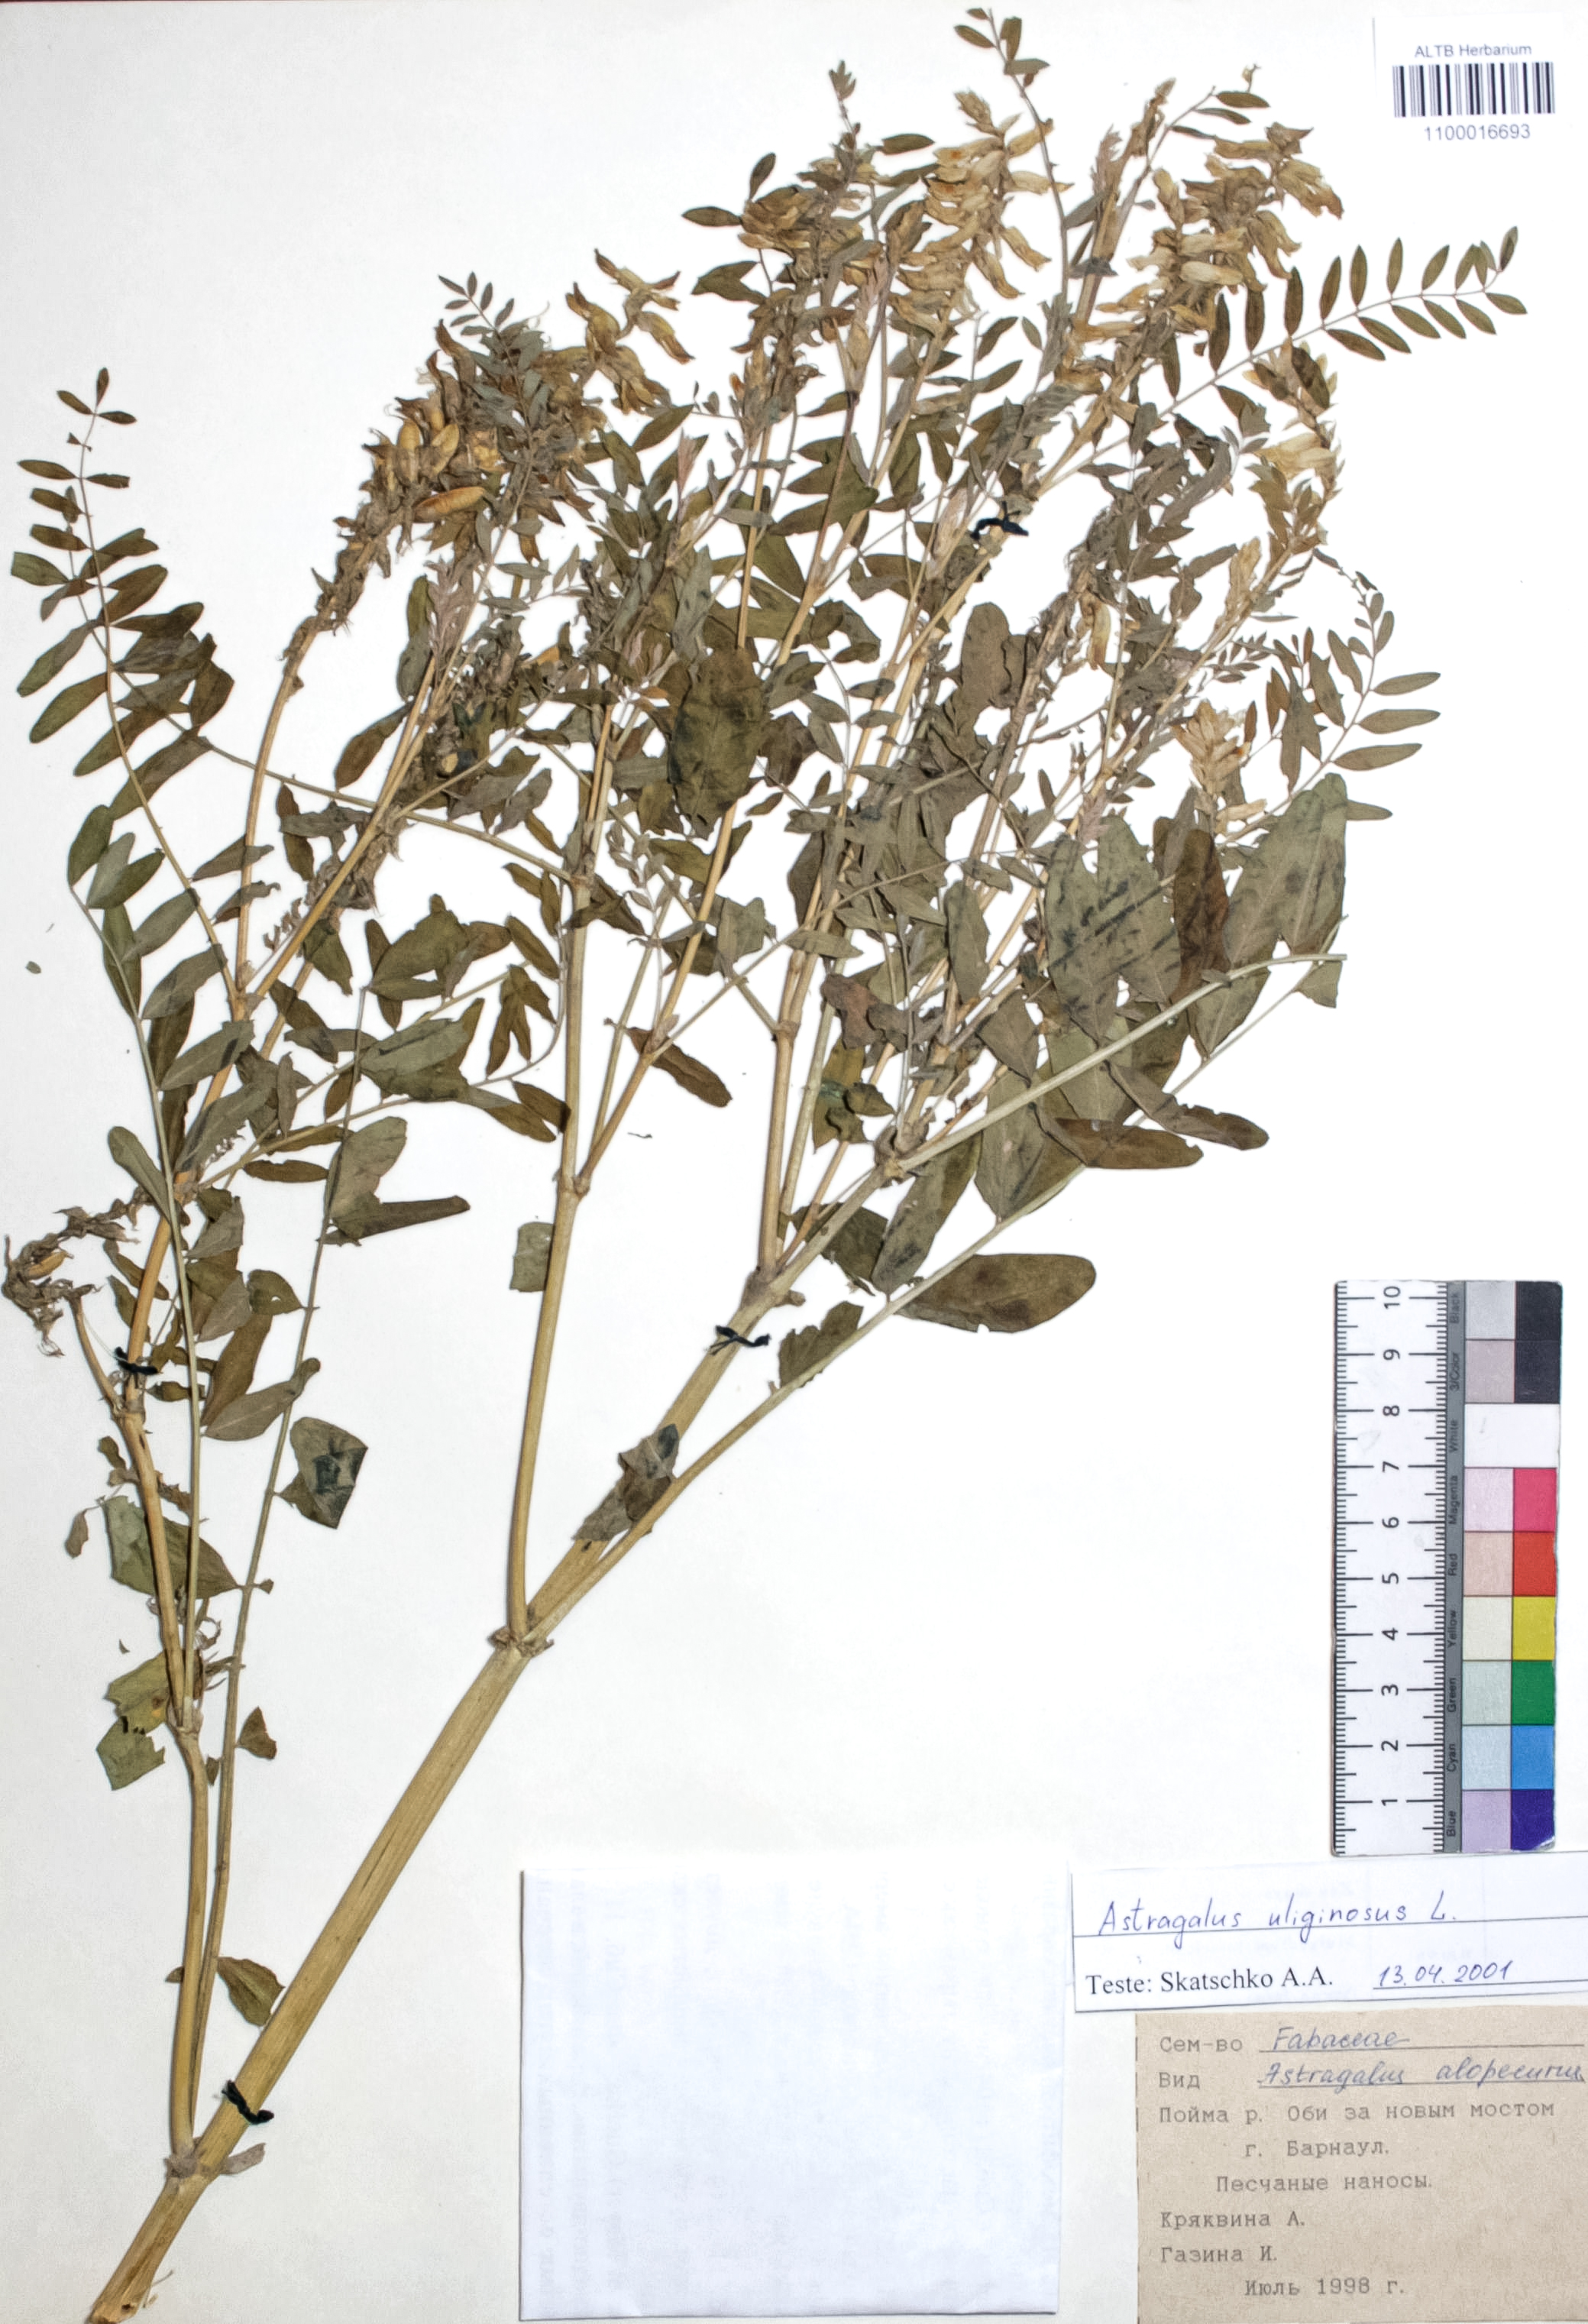 Astragalus uliginosus L